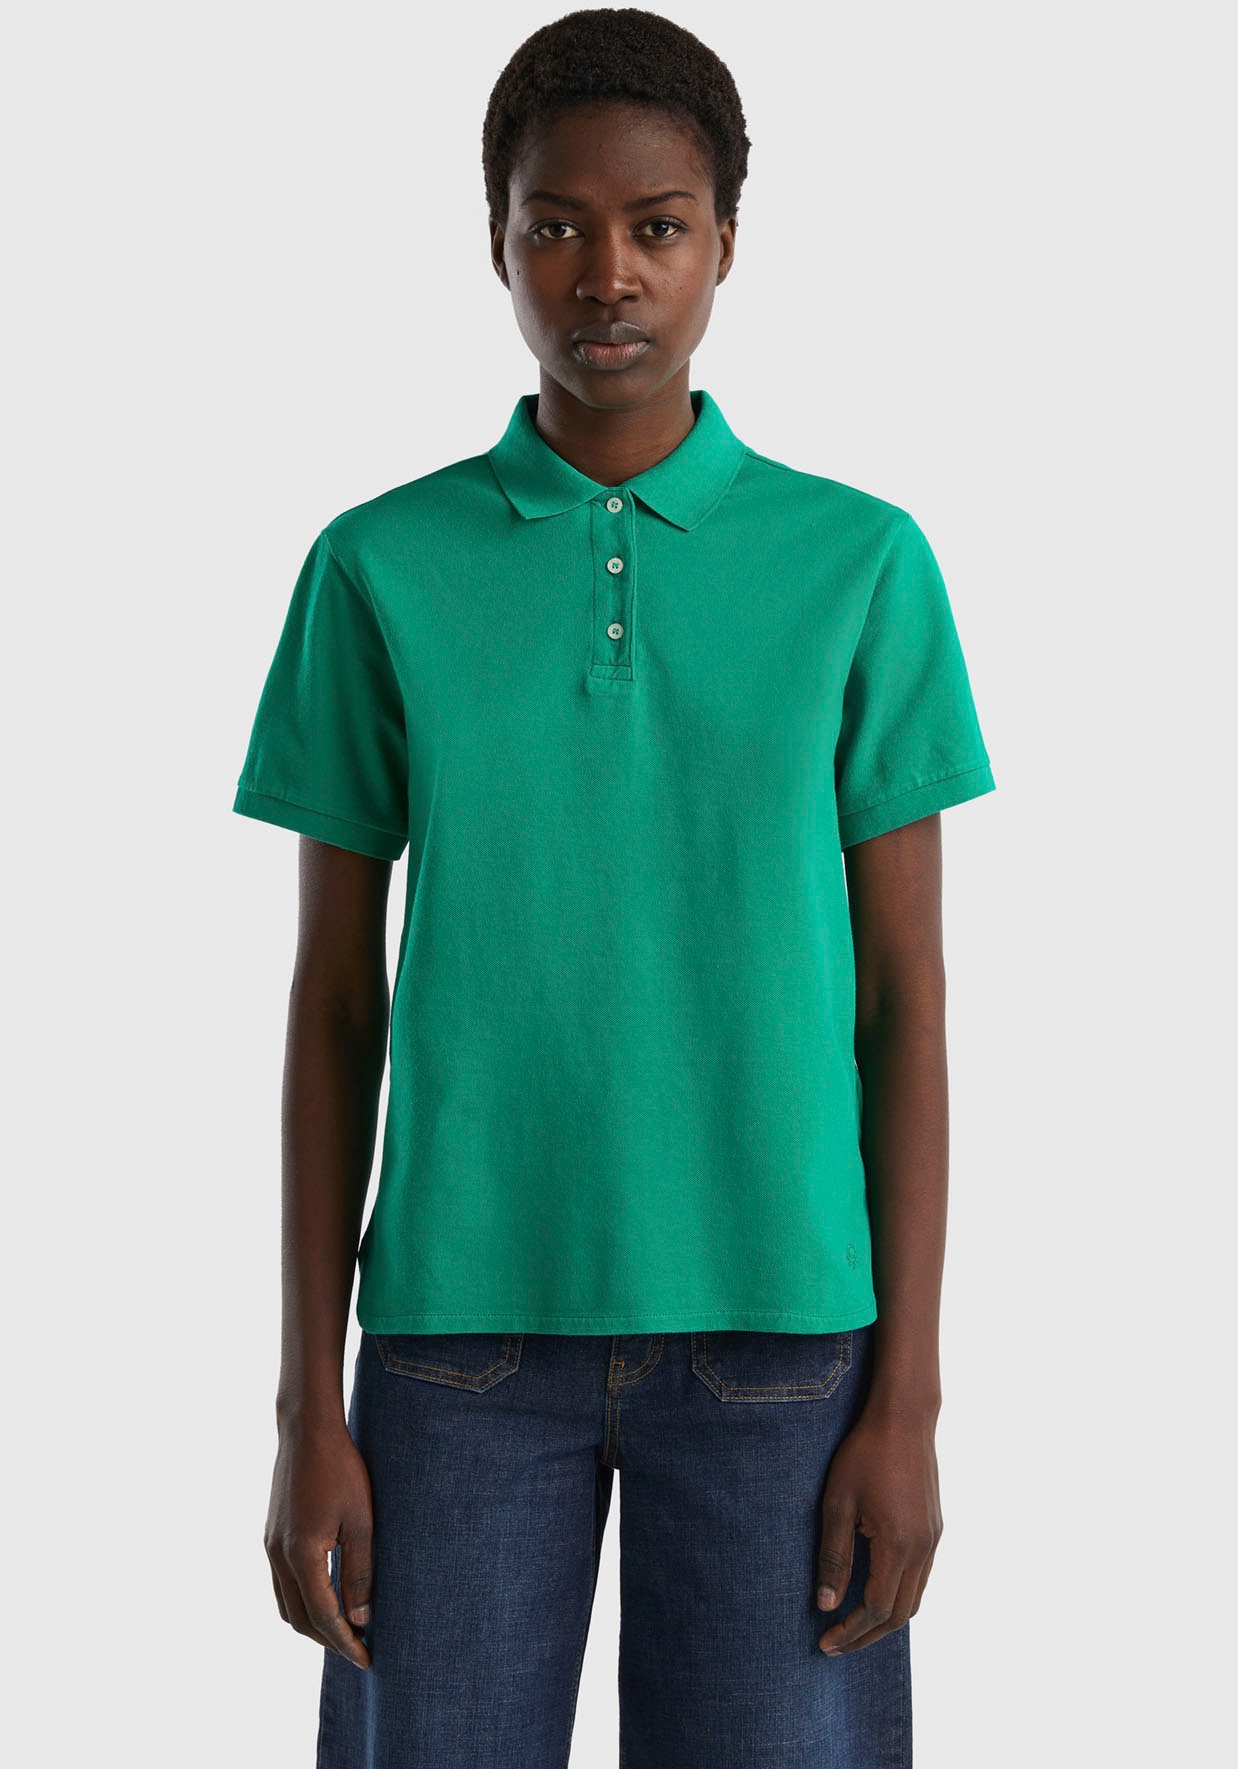 of OTTO online Benetton United mit Colors Poloshirt, perlmuttfarbenen bei kaufen Knöpfen